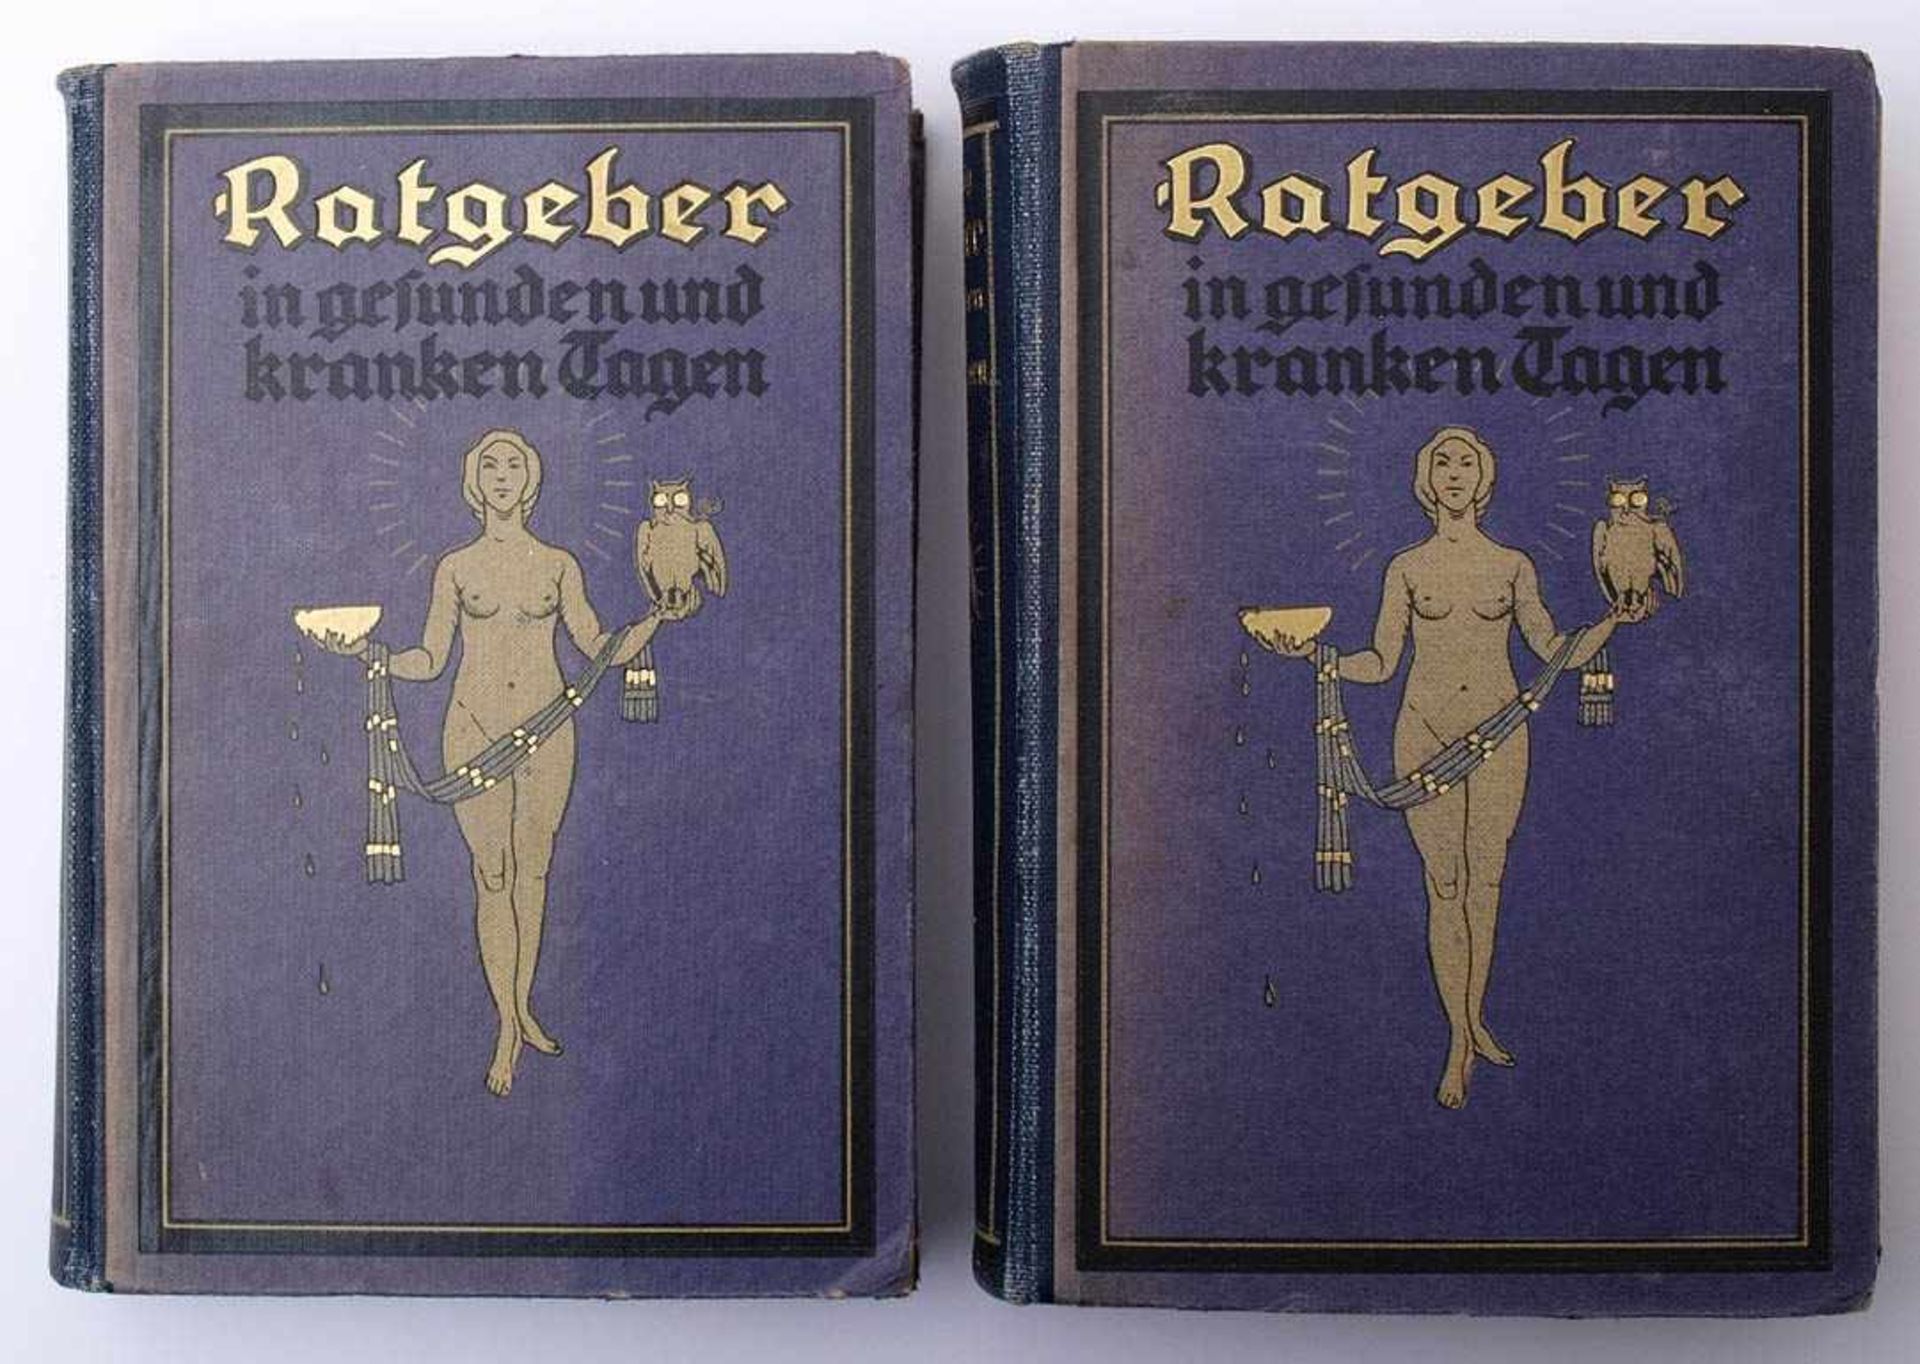 König, F.: Ratgeber in gesunden und kranken TagenBd. 1 und 2, Karl Meyer, Leipzig 1922. Mit farbigen